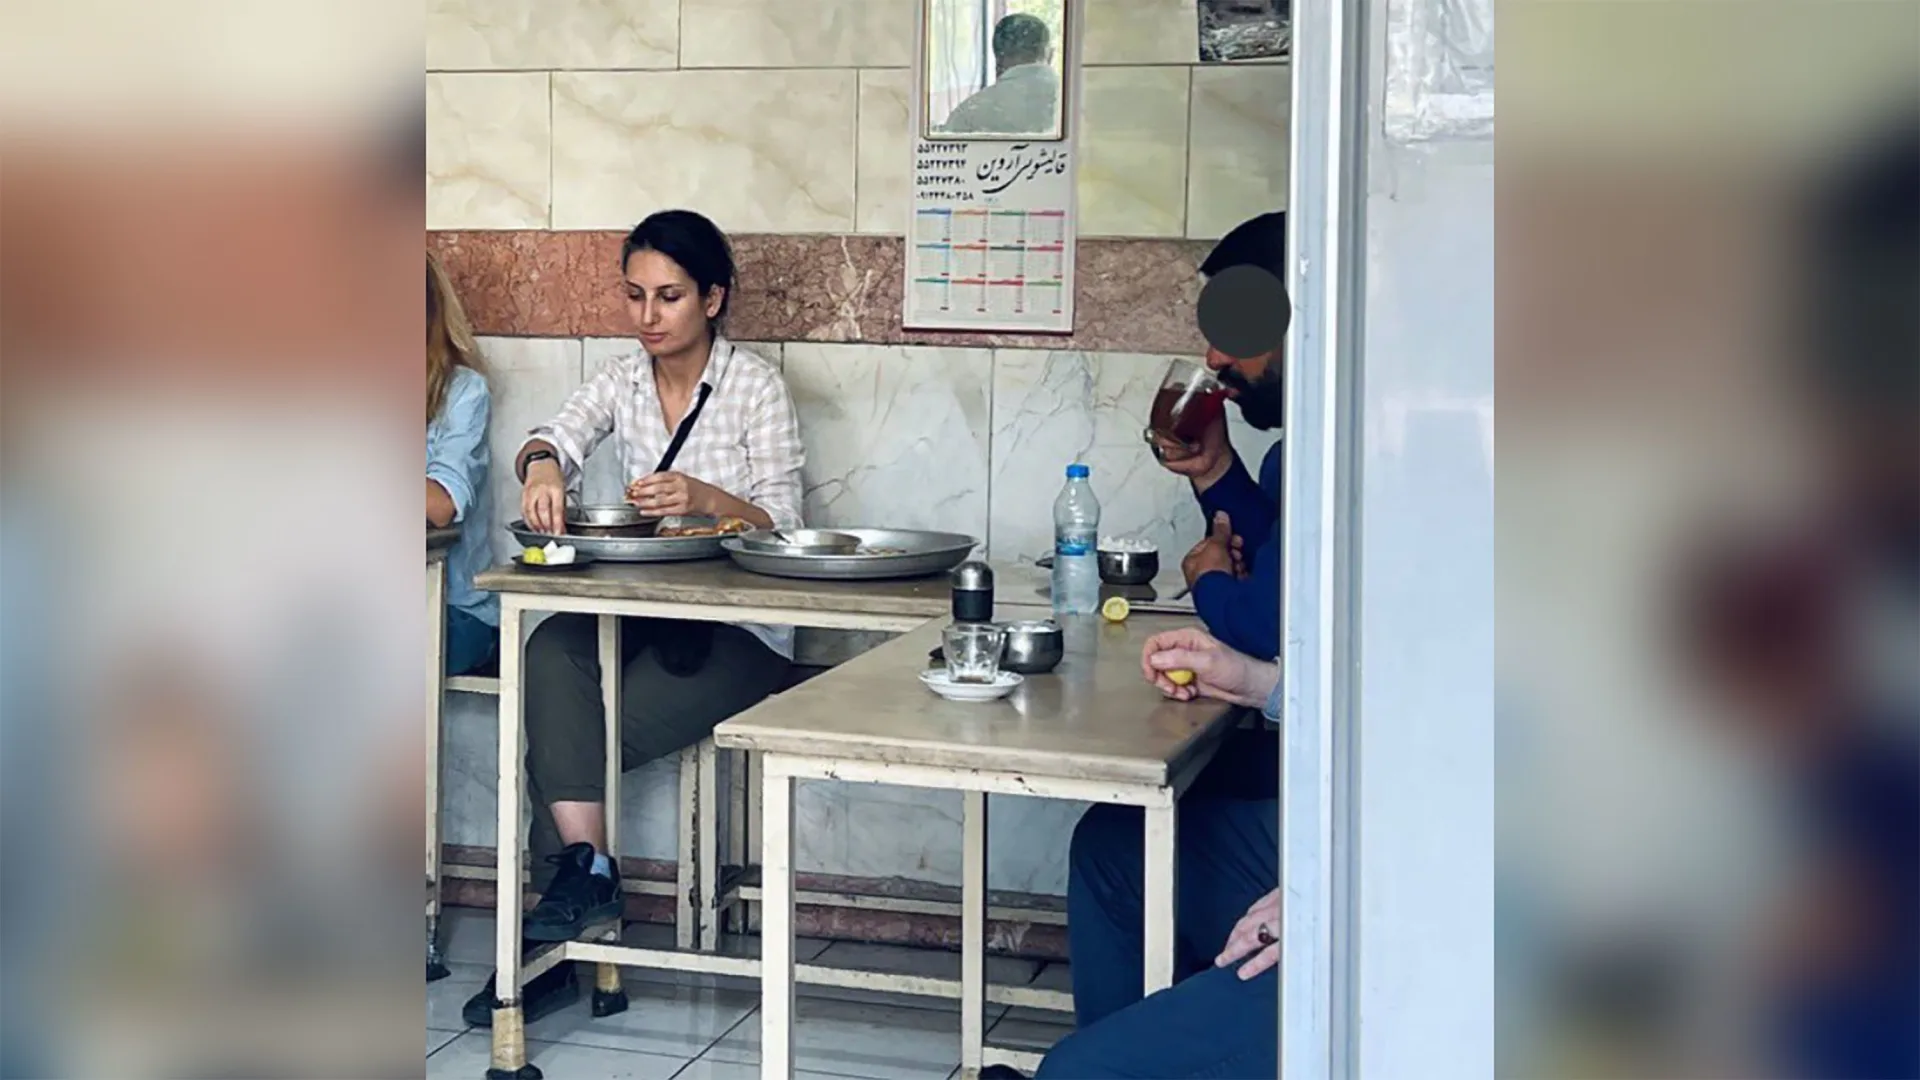 إيران.. اعتقال امرأة لتناولها الطعام في مطعم دون حجاب